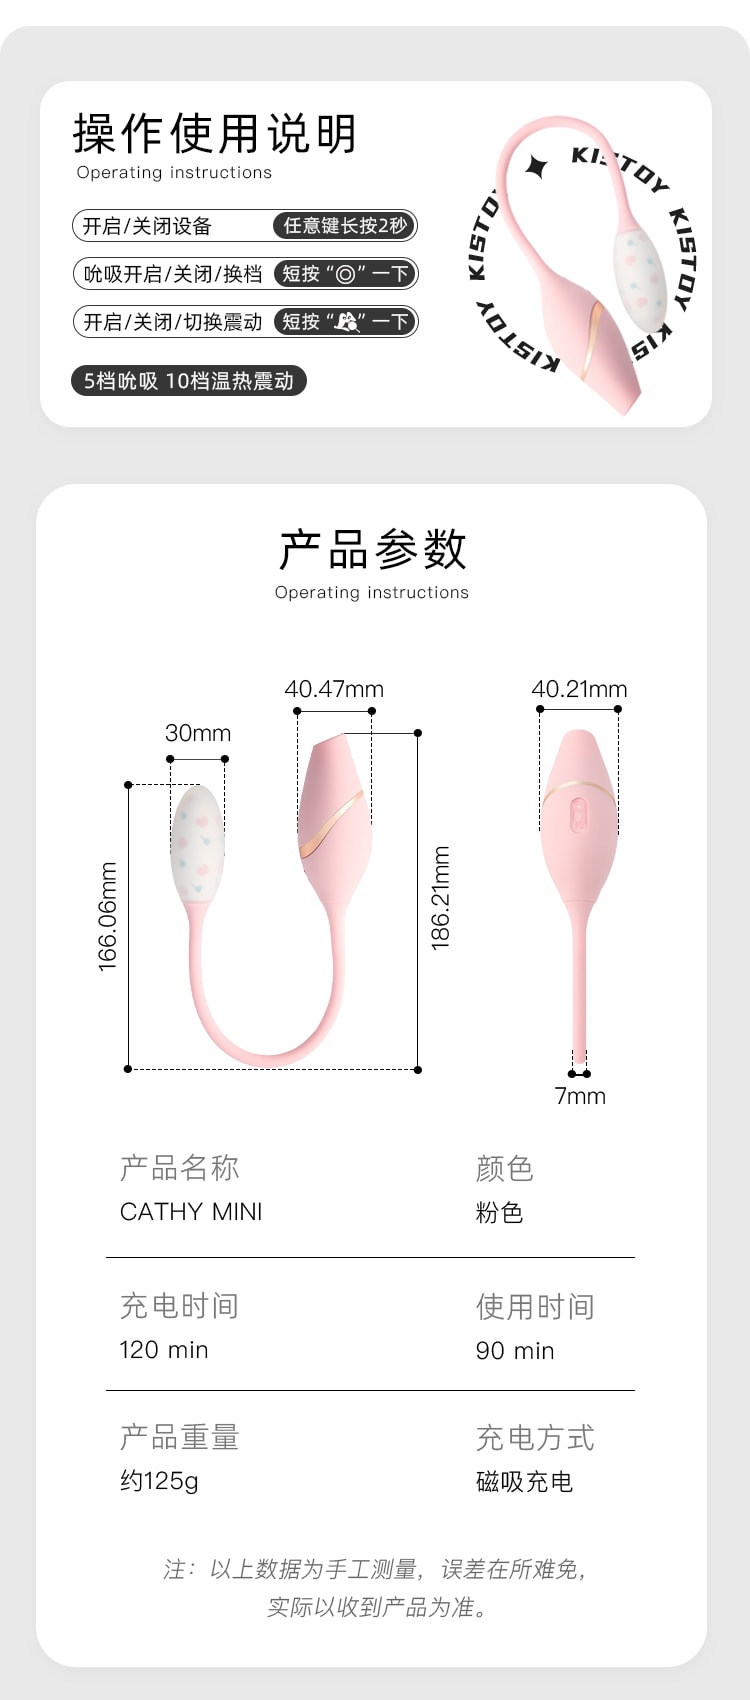 KISSTOY 新款Cathy Mini双头吮吸震动棒女性情趣用具 成人用品 粉色1件